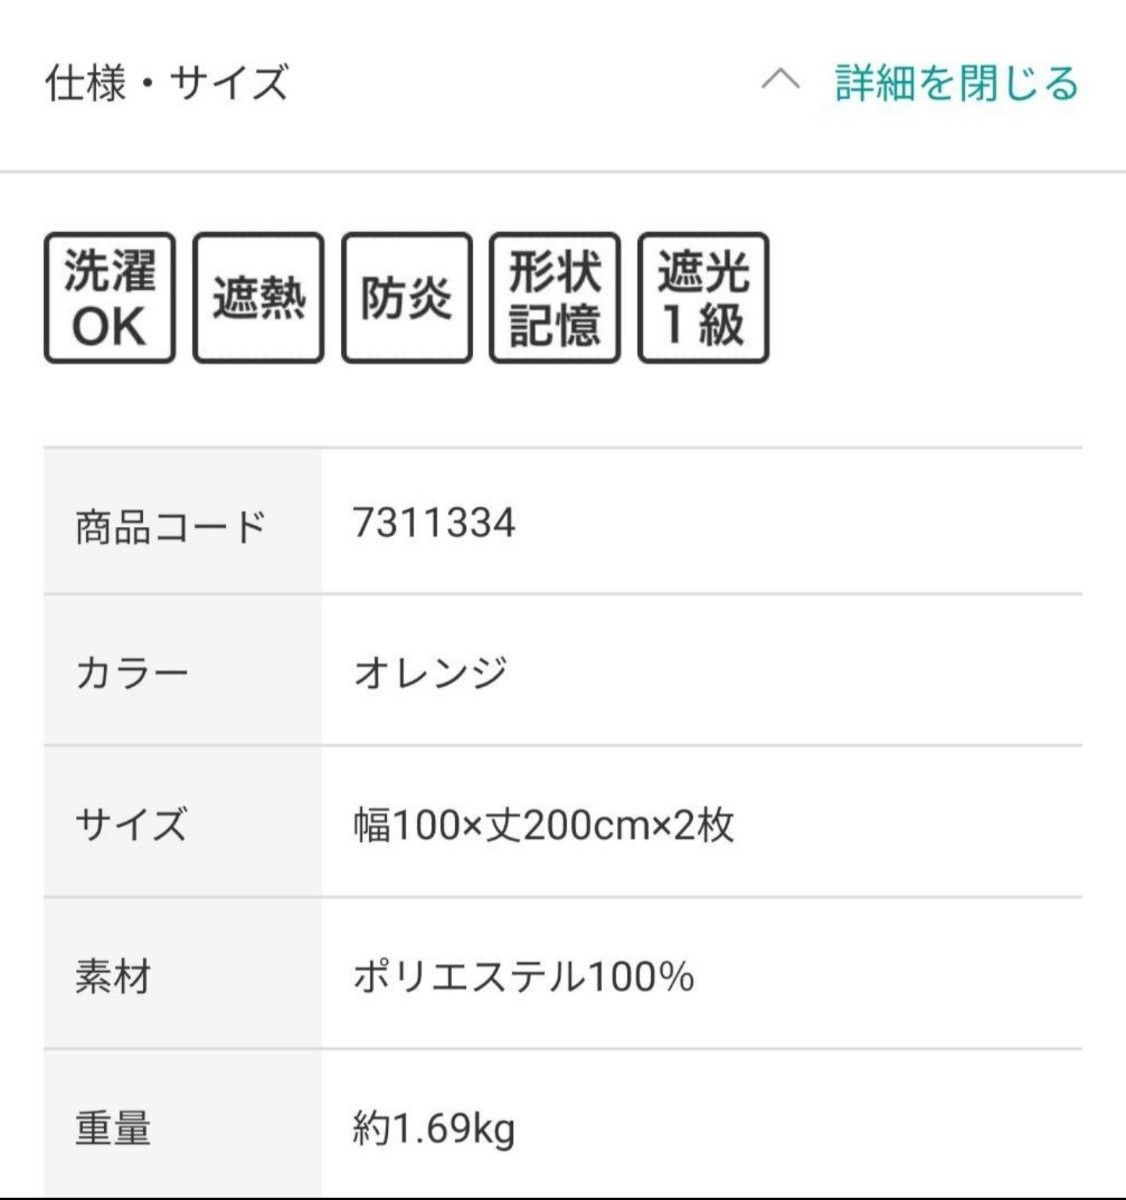 【超美品】NITORIニトリ 遮光・防炎カーテン(ノーチェ 100x200x2)